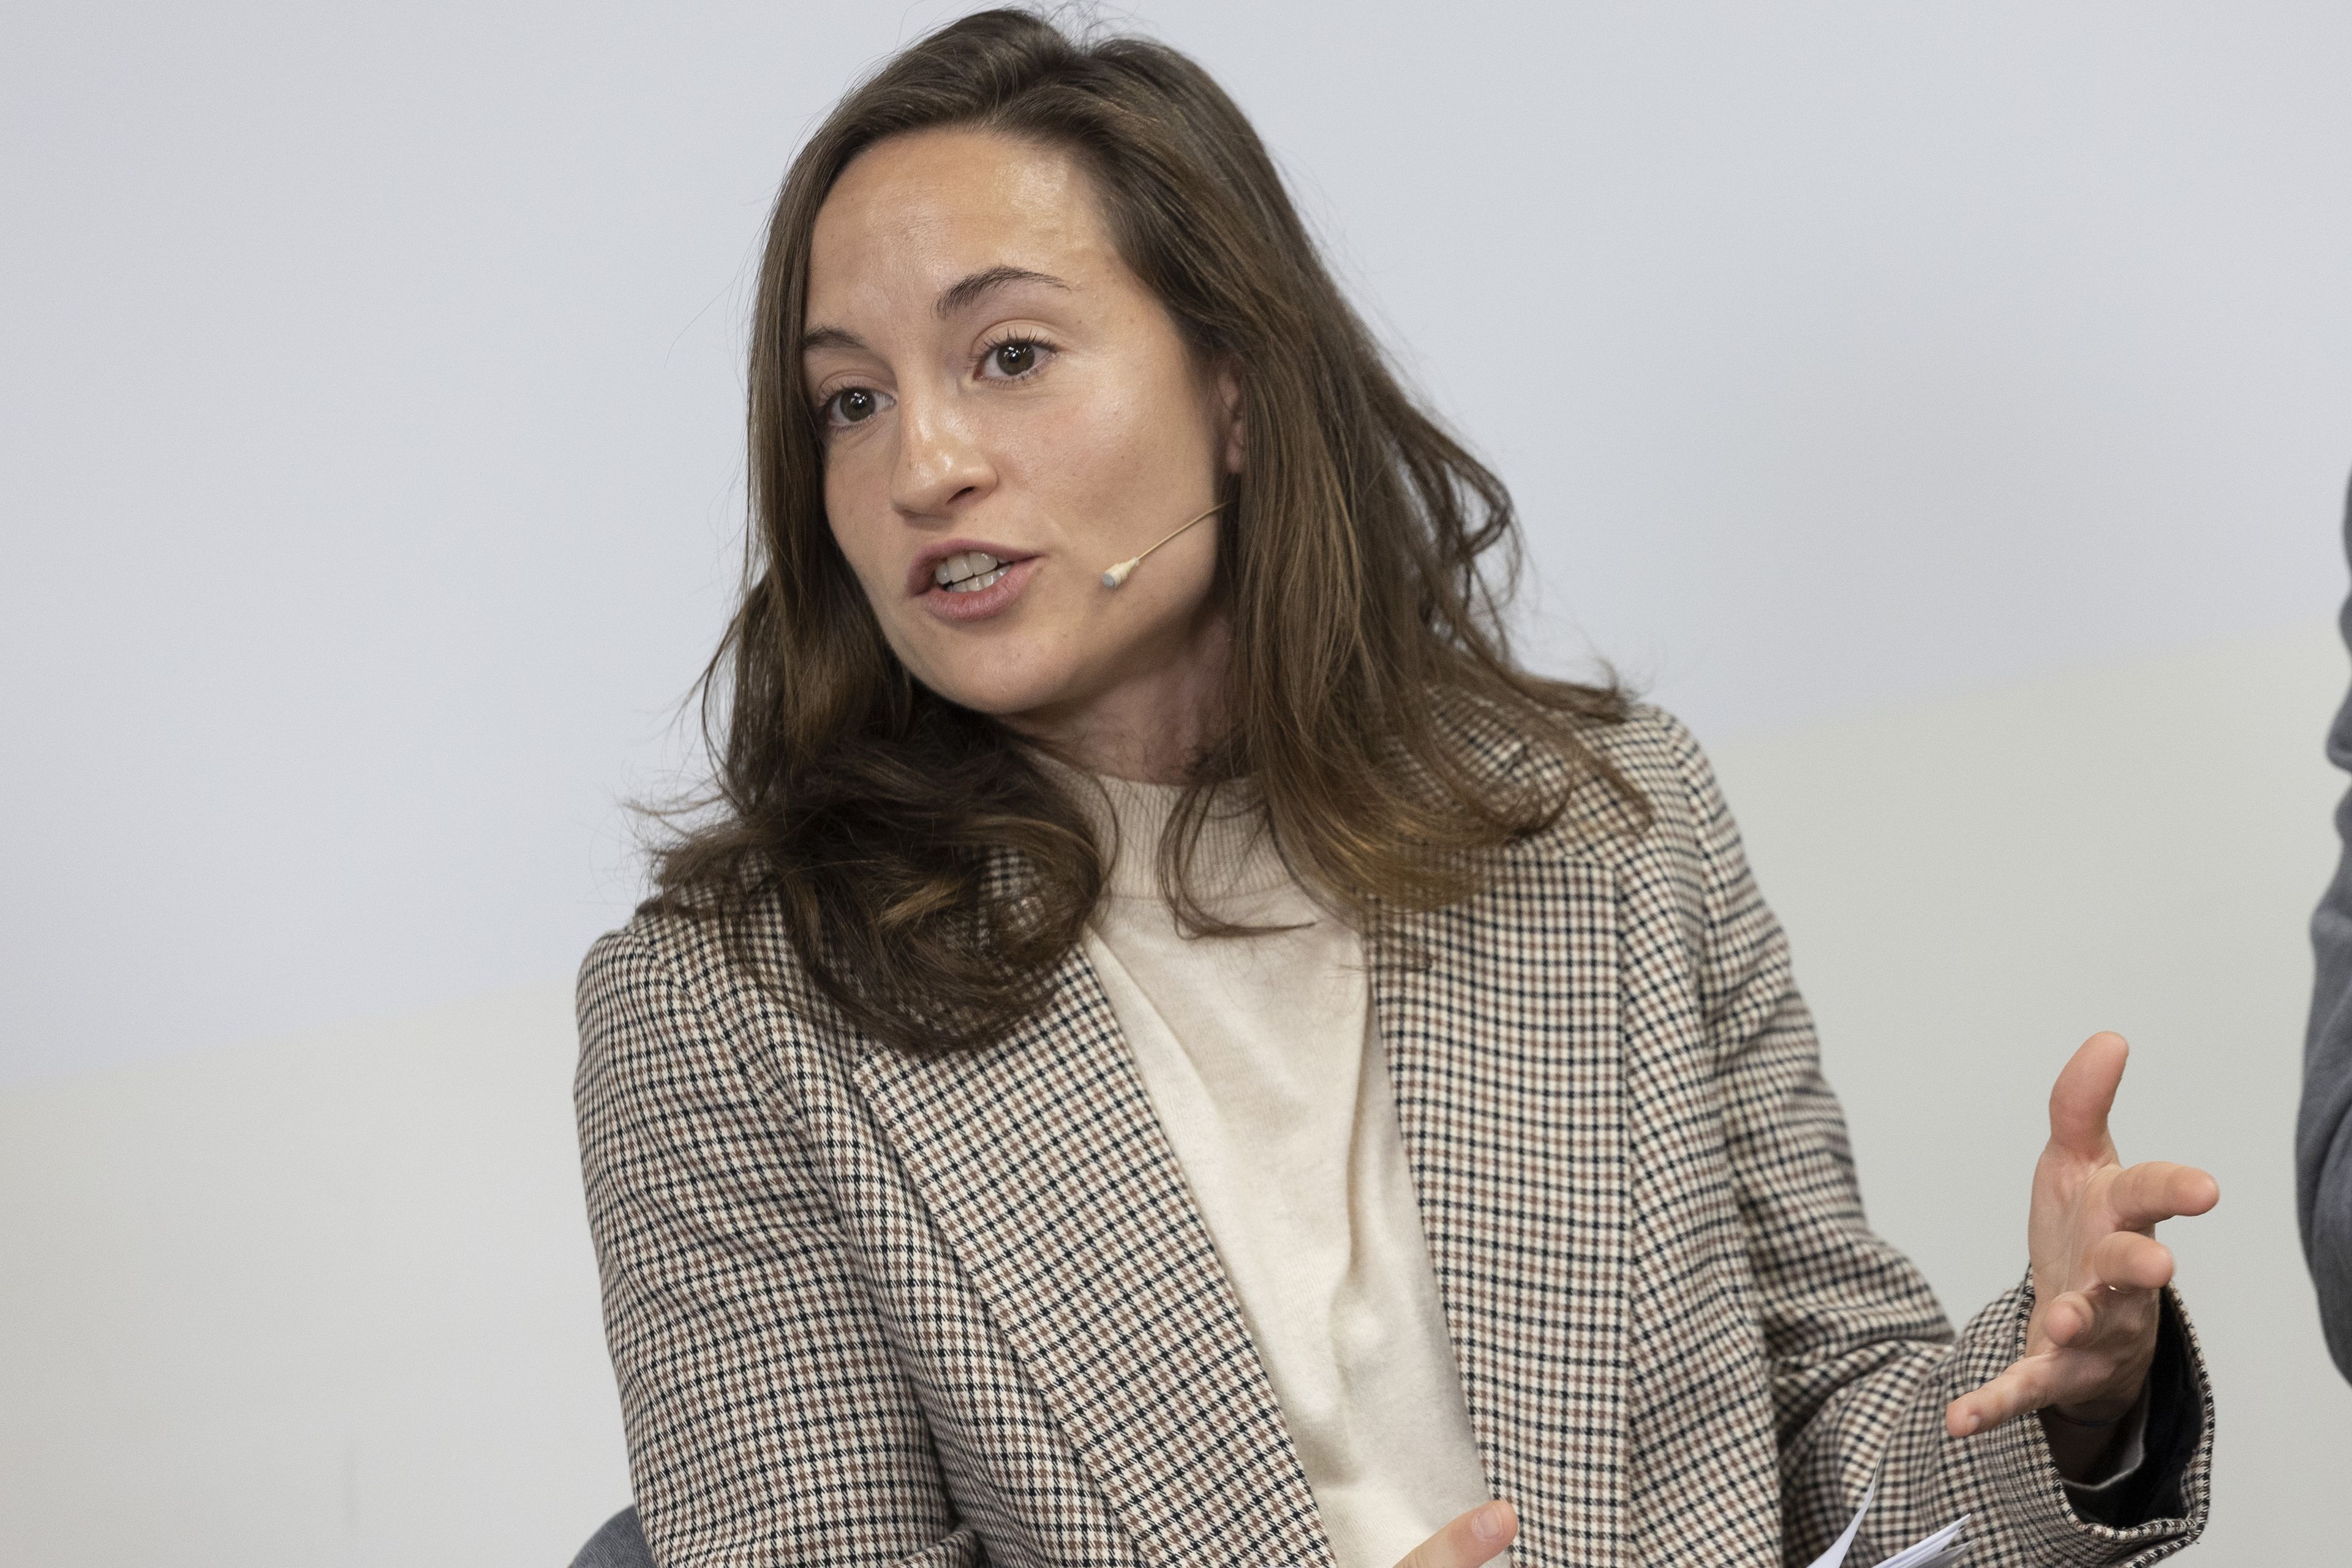 Inma Benedito, moderadora de la jornada y redactora de Business Insider España